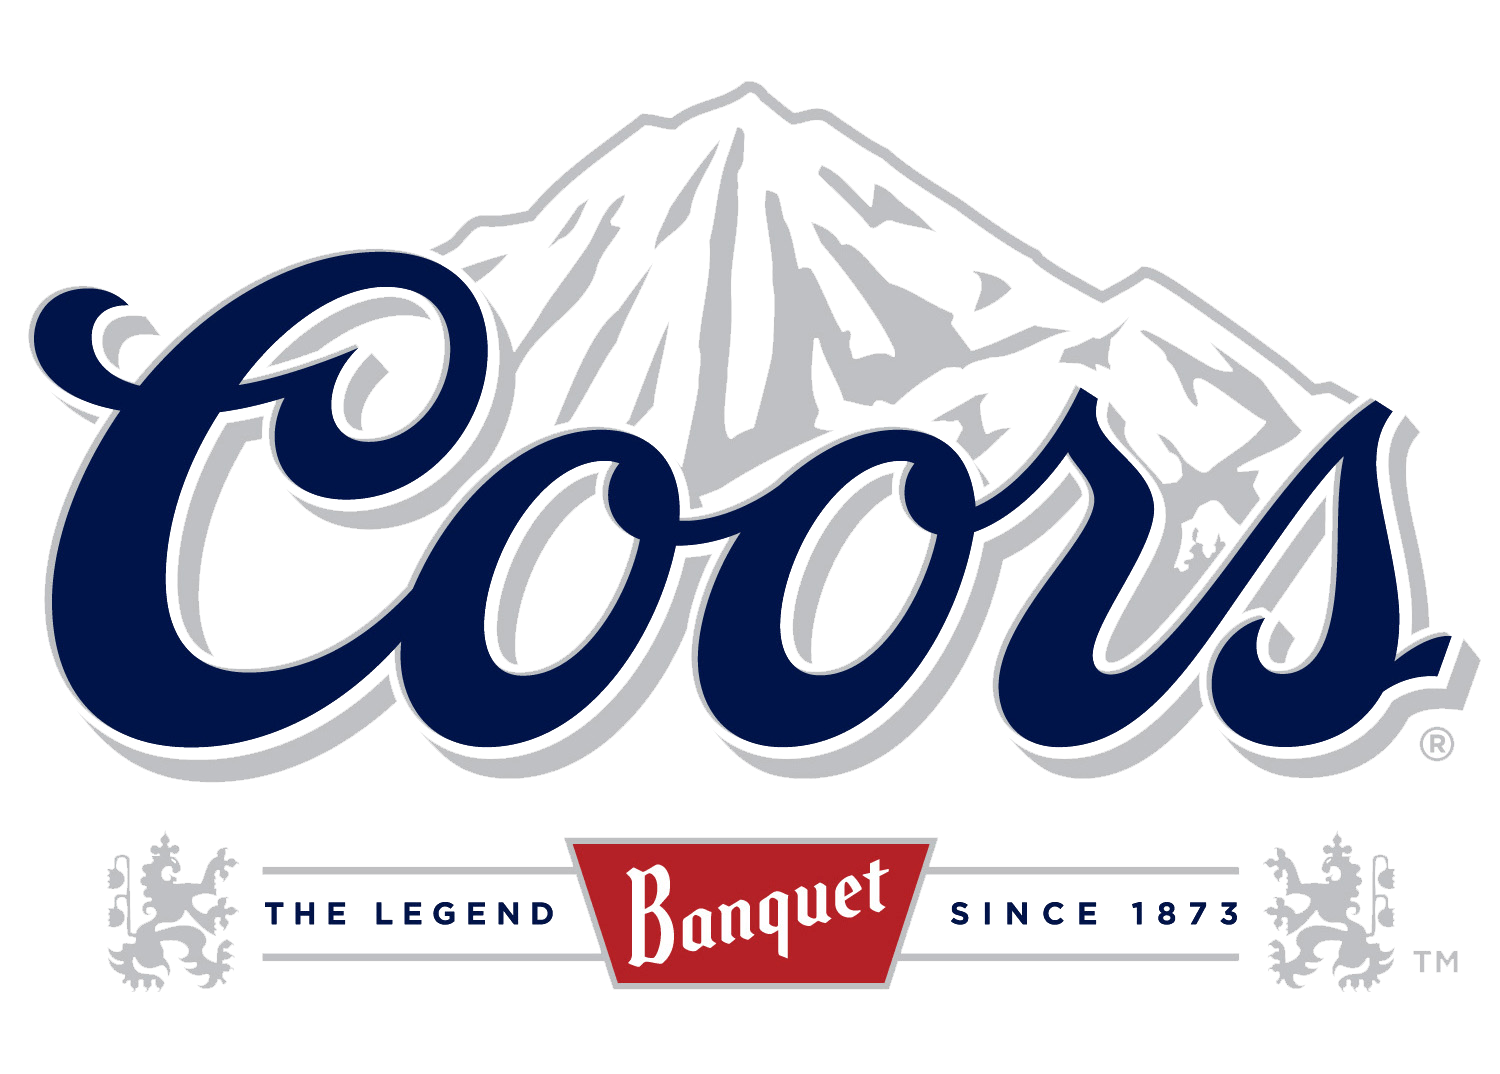 Coors Original Logo - Coors Logos